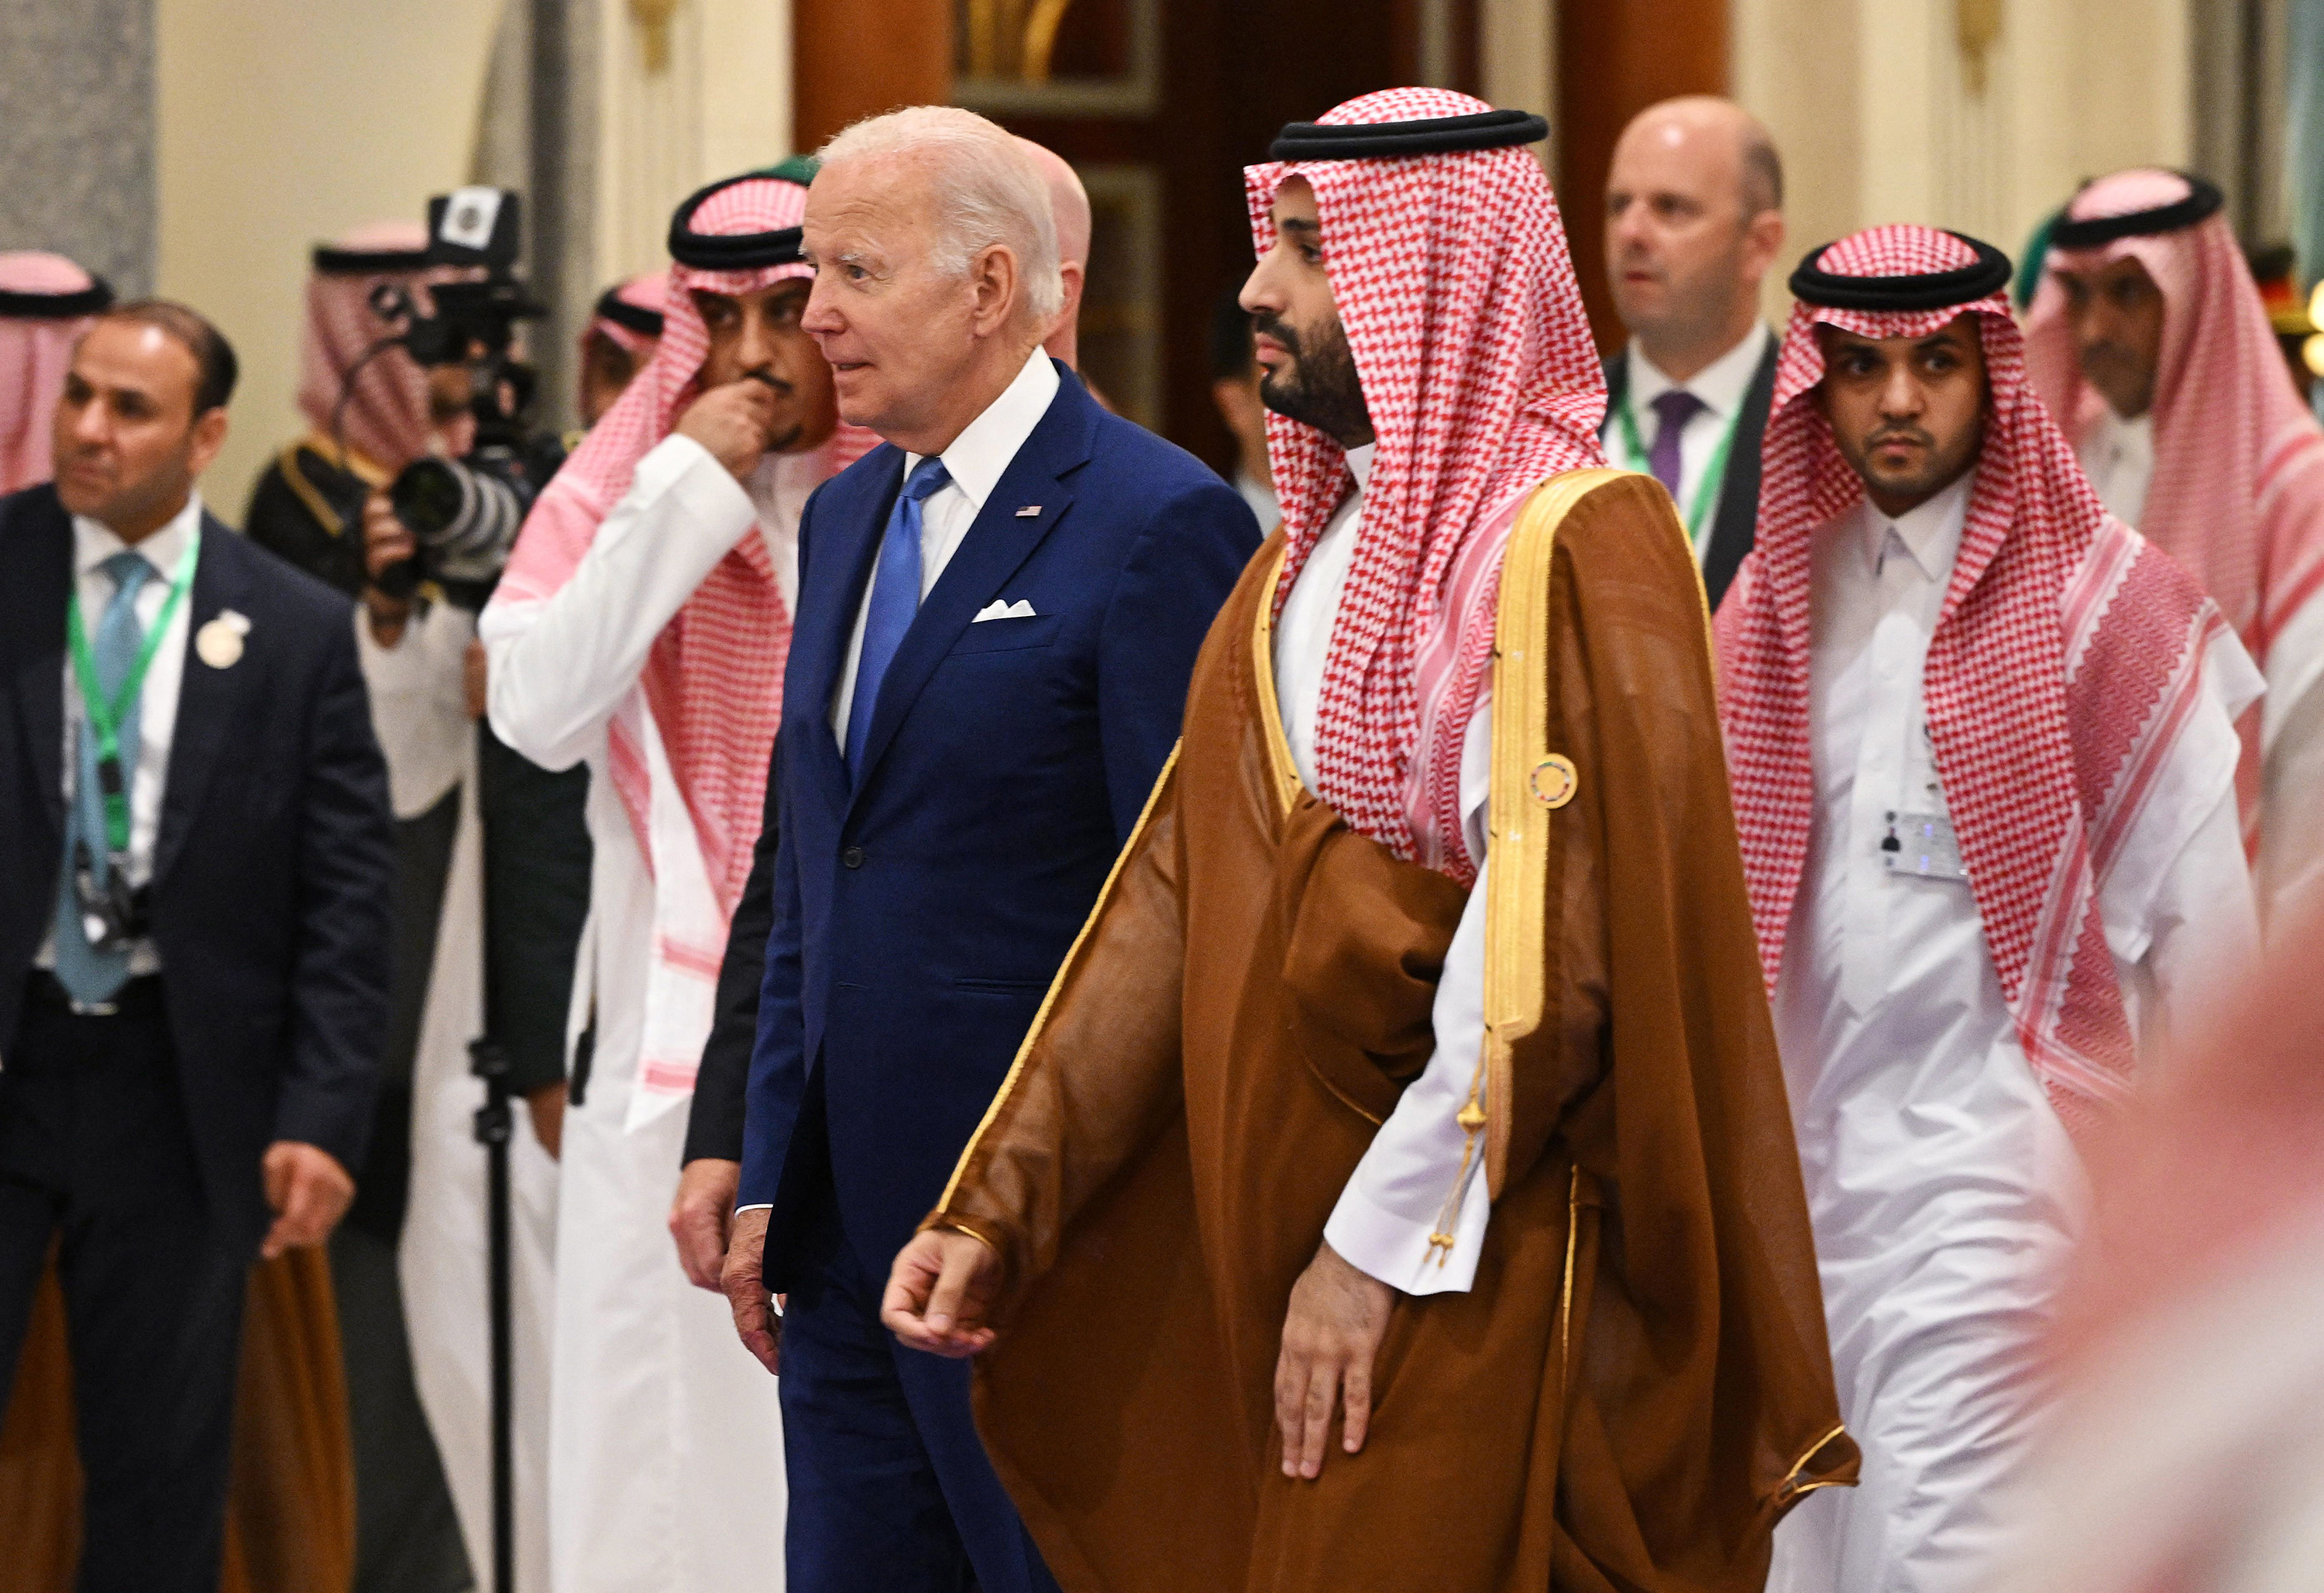 La polémica visita de Biden a Medio Oriente. ¿Cuáles son las conclusiones?  - CNN Video